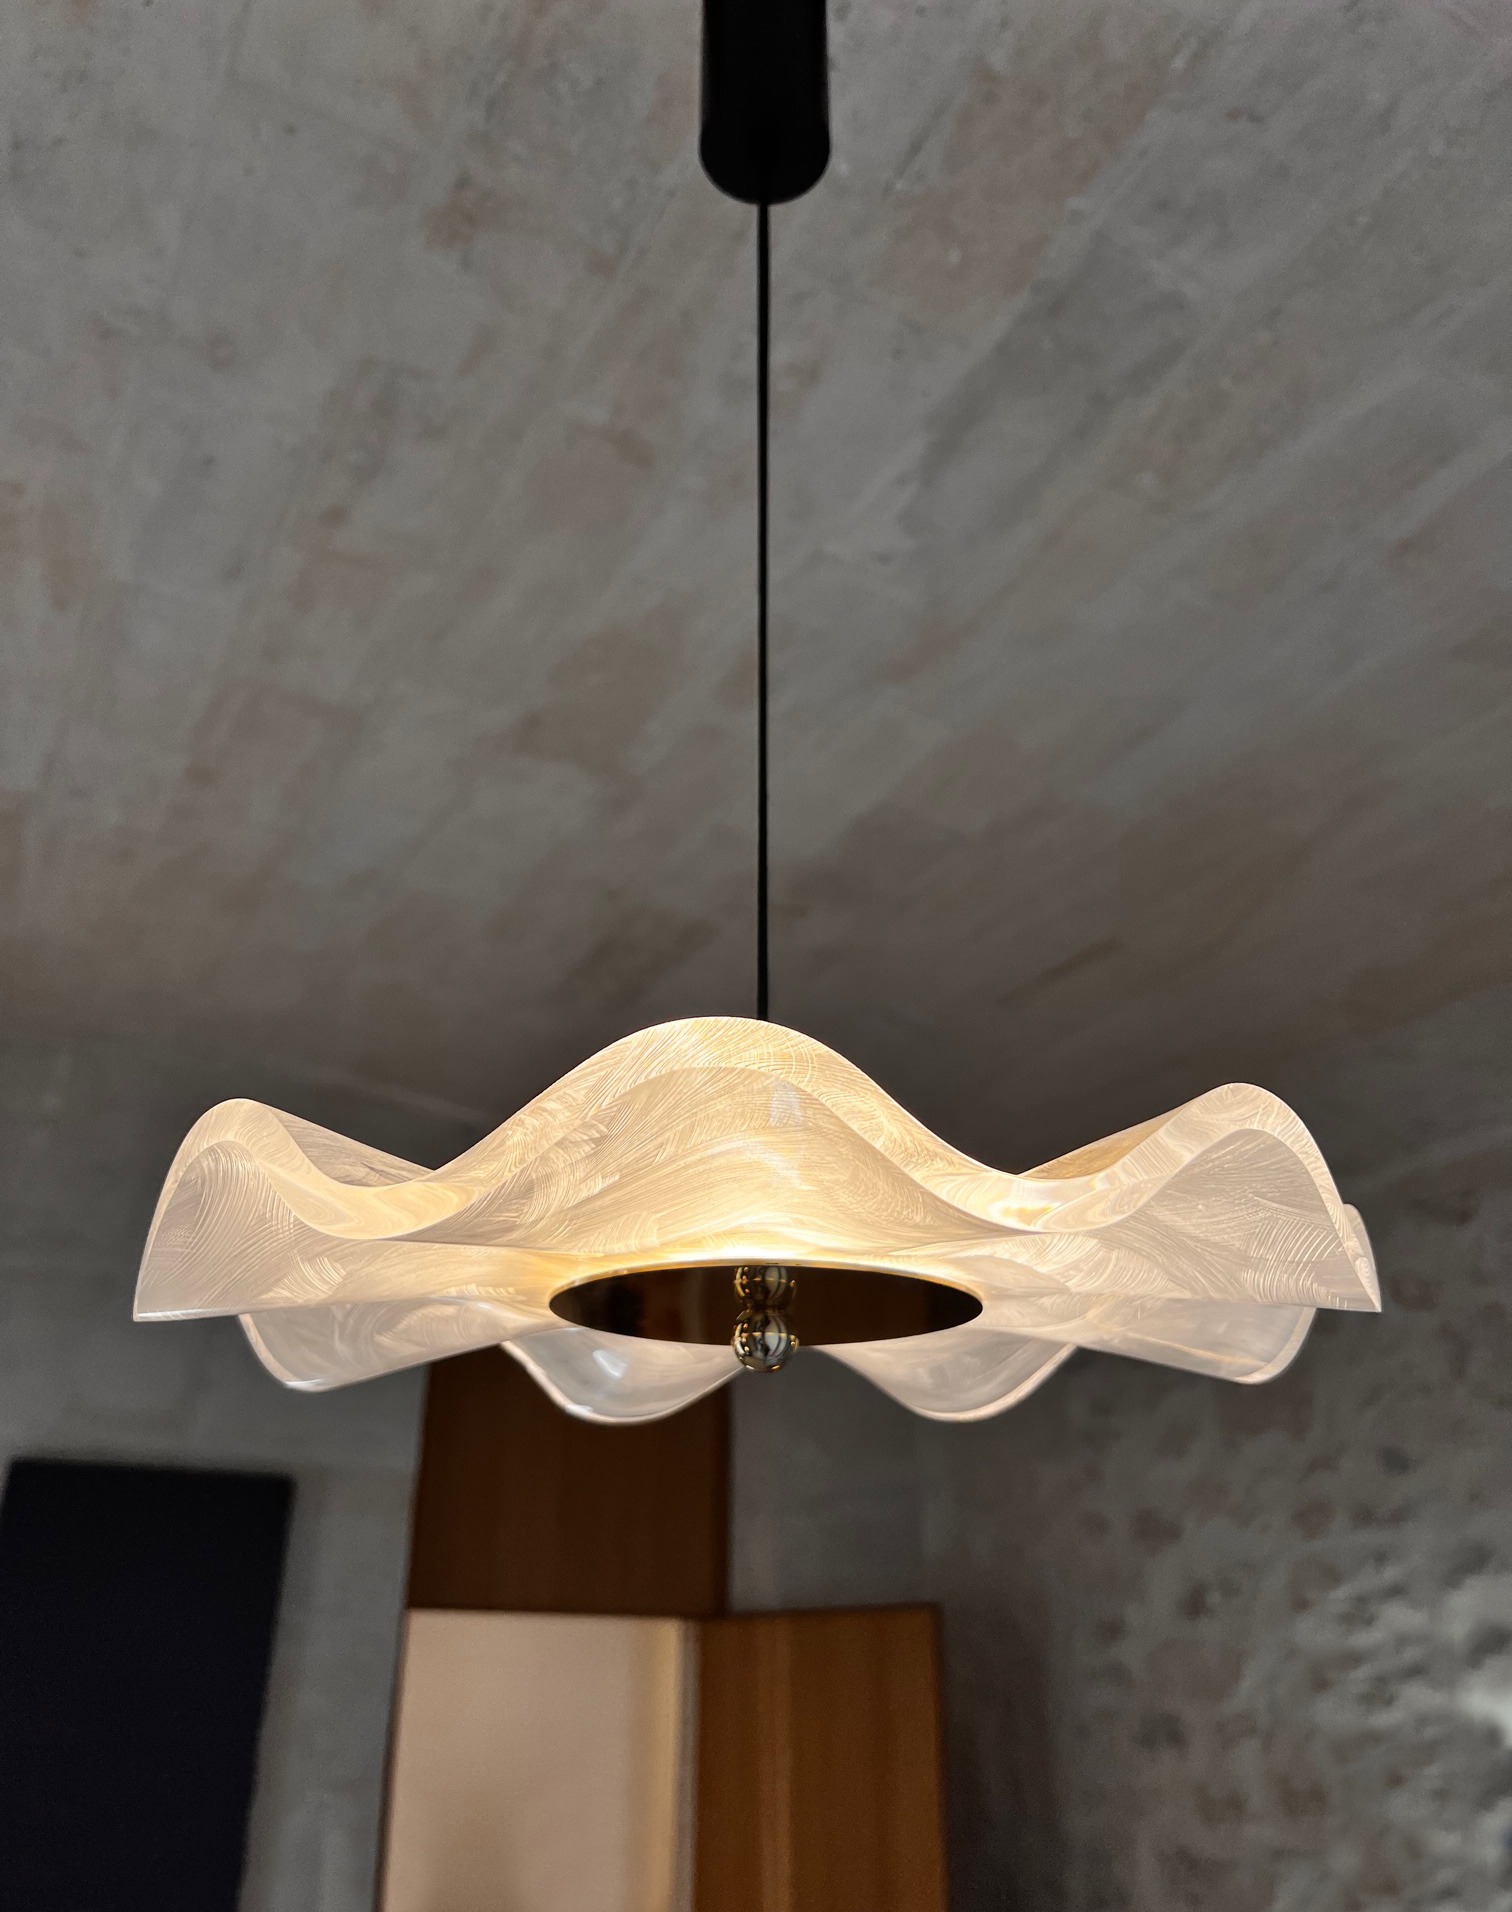 COLETTE, notre nouvelle collection de luminaires design intemporels